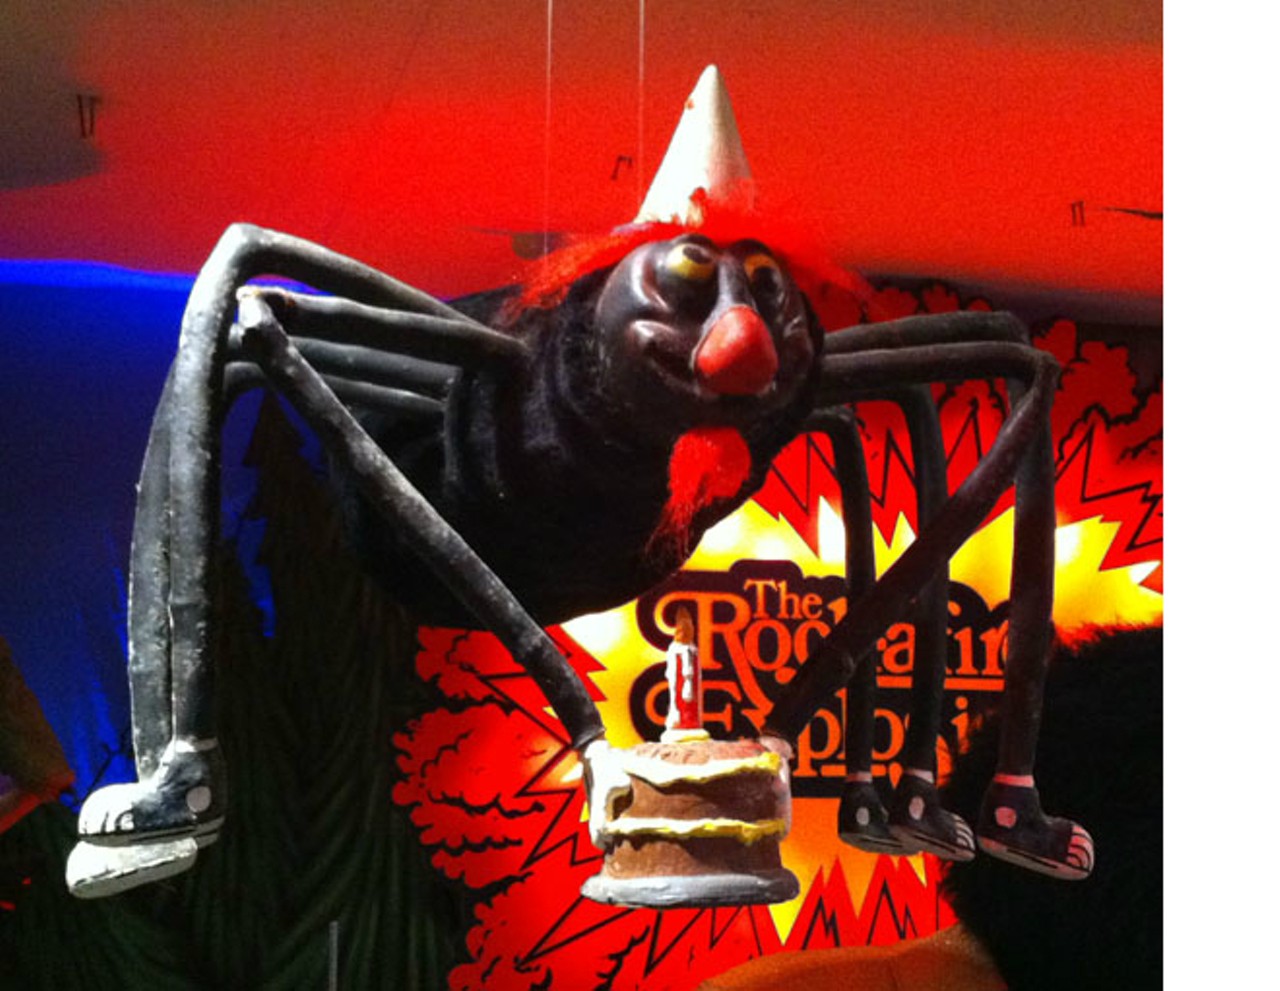 Fatz had a pet &#150;&nbsp;he was called Antioch the birthday spider. Photo via Showbizpizza.com